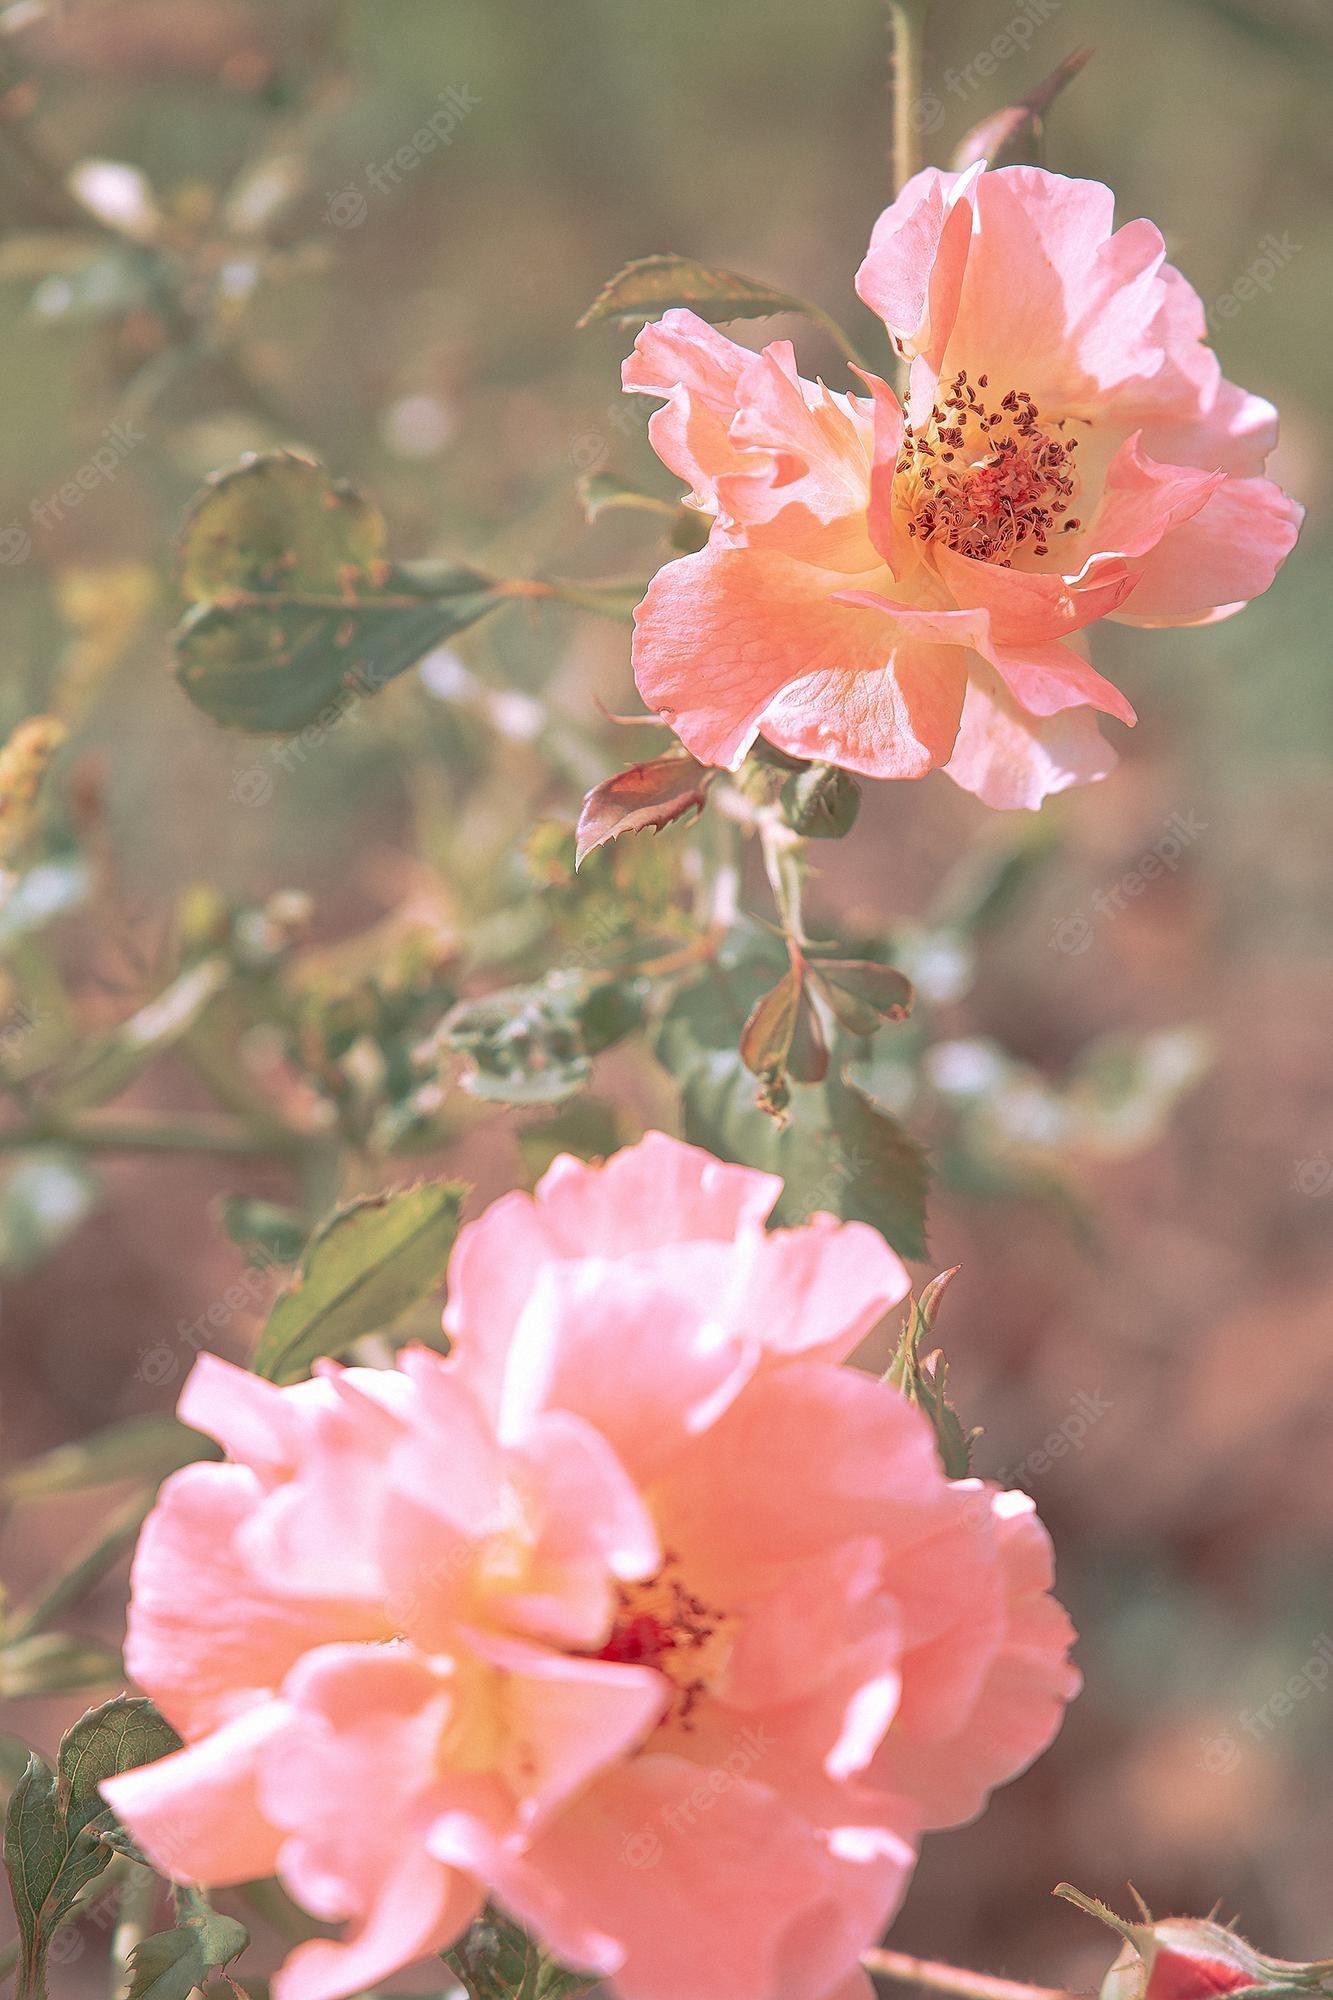  Rosa Rosen Hintergrundbild 1333x2000. Ästhetische tapete mit rosa rosen. sommerzeit, blüte, romantisches konzept. im freien parken